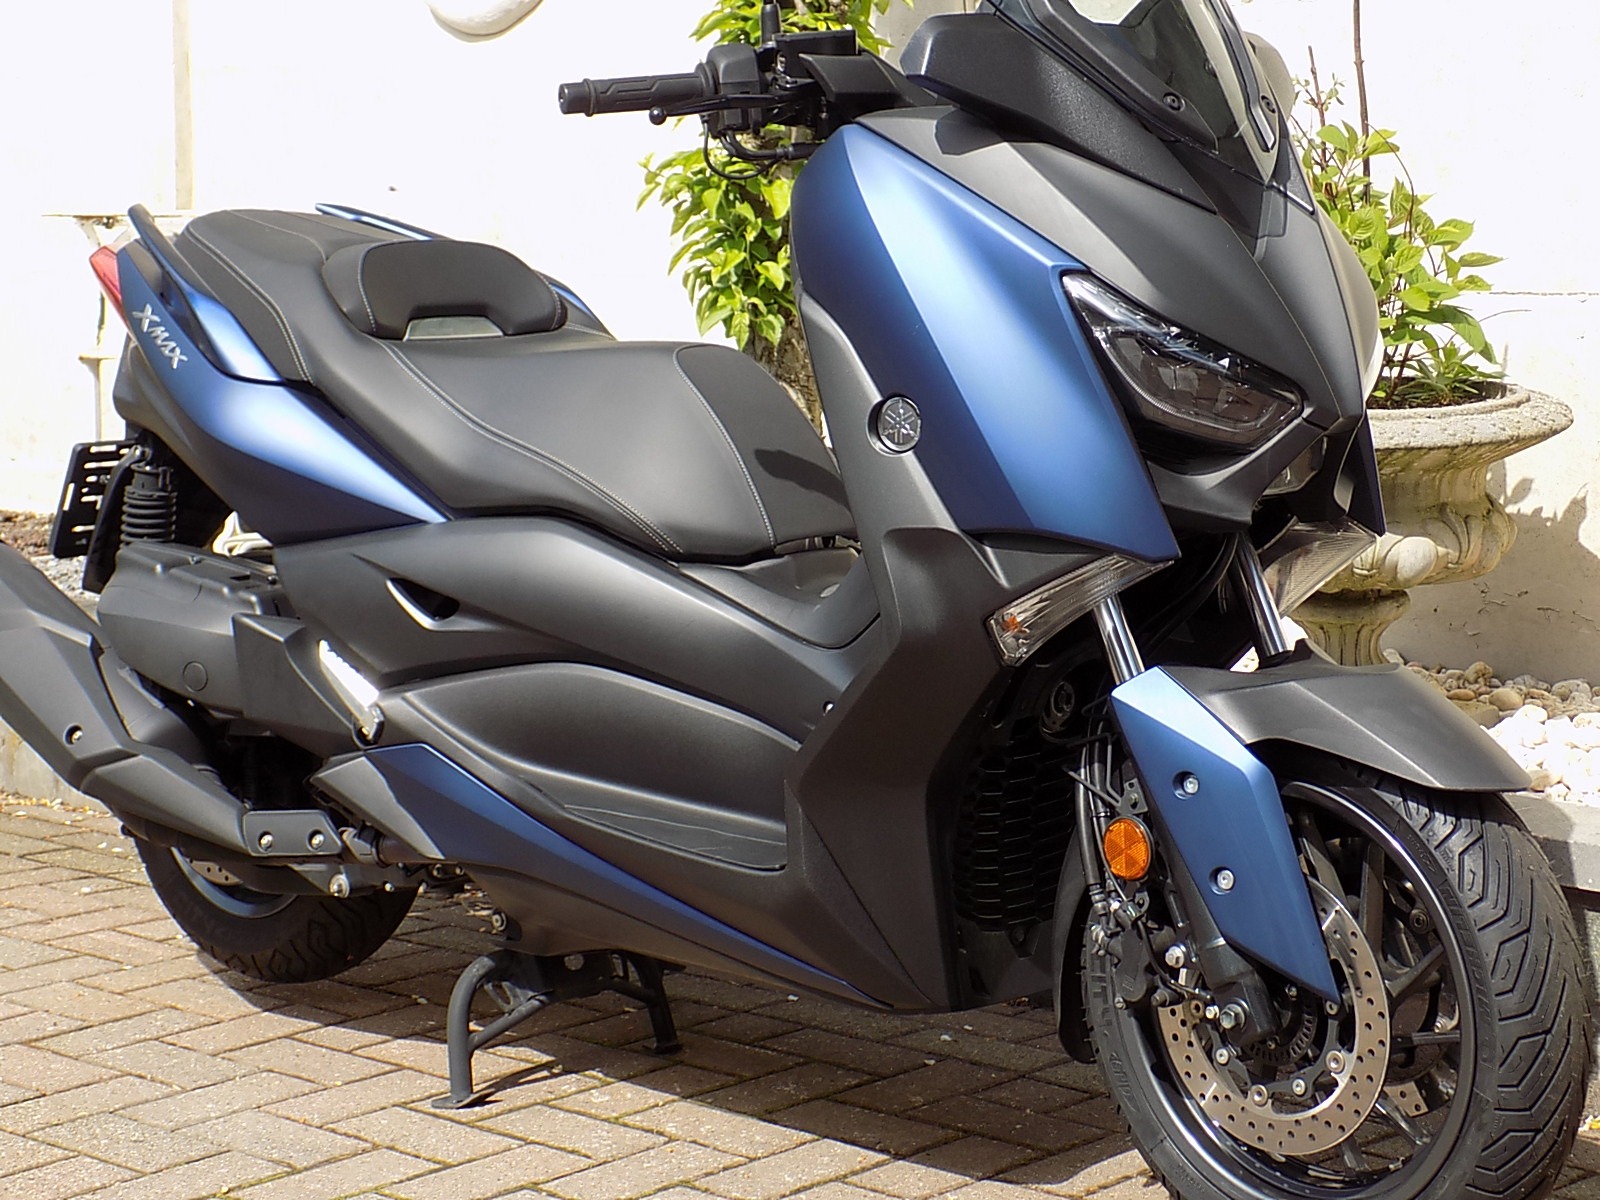 Je bekijkt nu Yamaha X Max 400 cc nieuw model